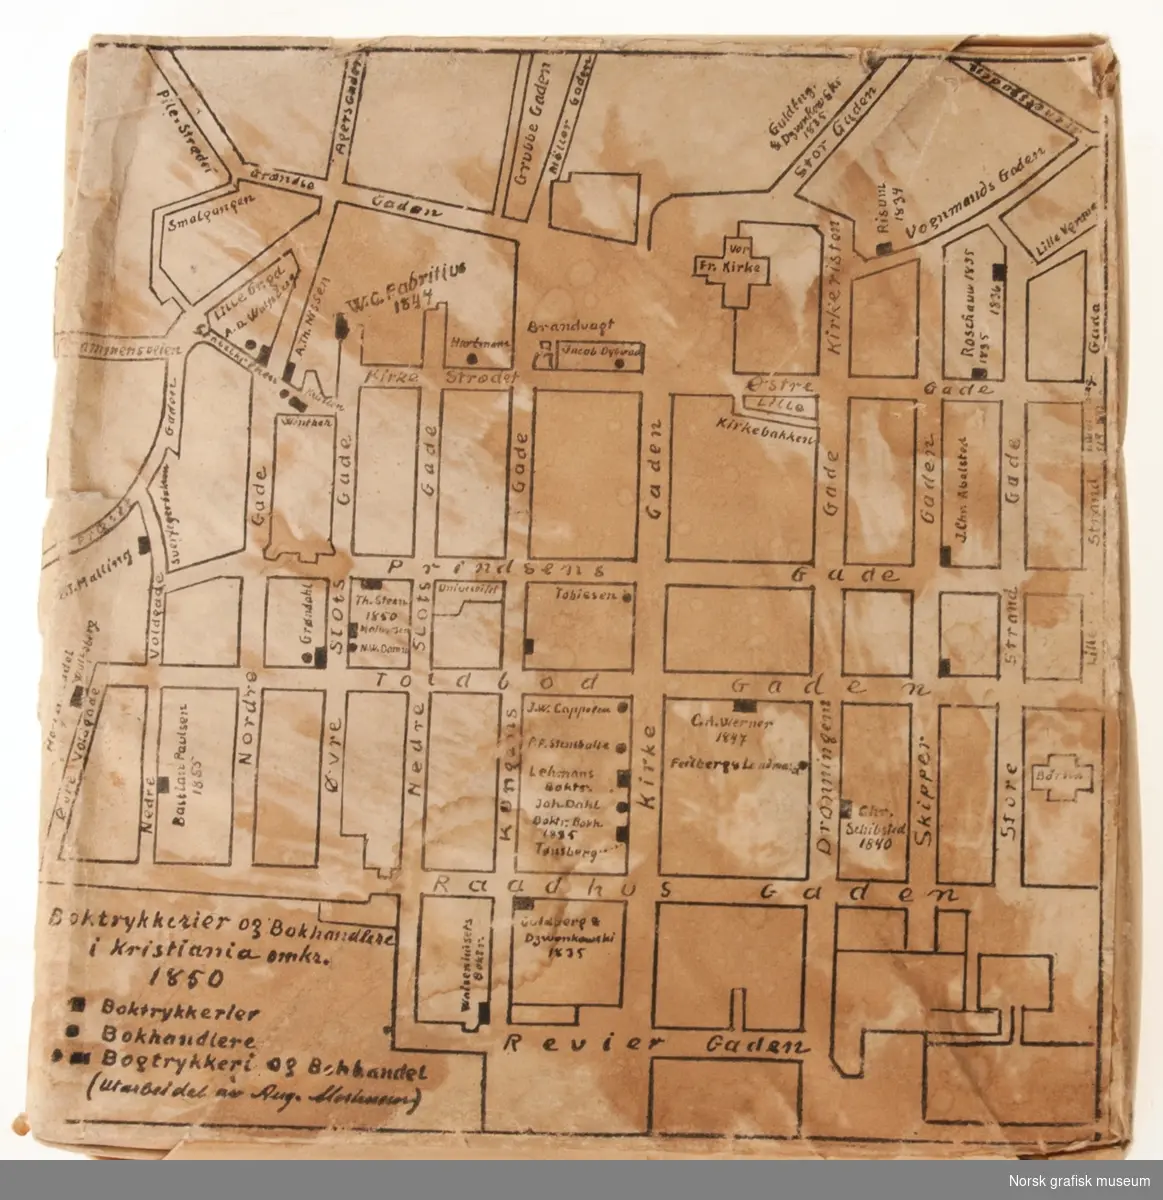 En innpakket klisje med motivet trykt på utsiden. Motivet viser et kart over boktrykkerier og bokhandlere i Kristiania omkring 1850.